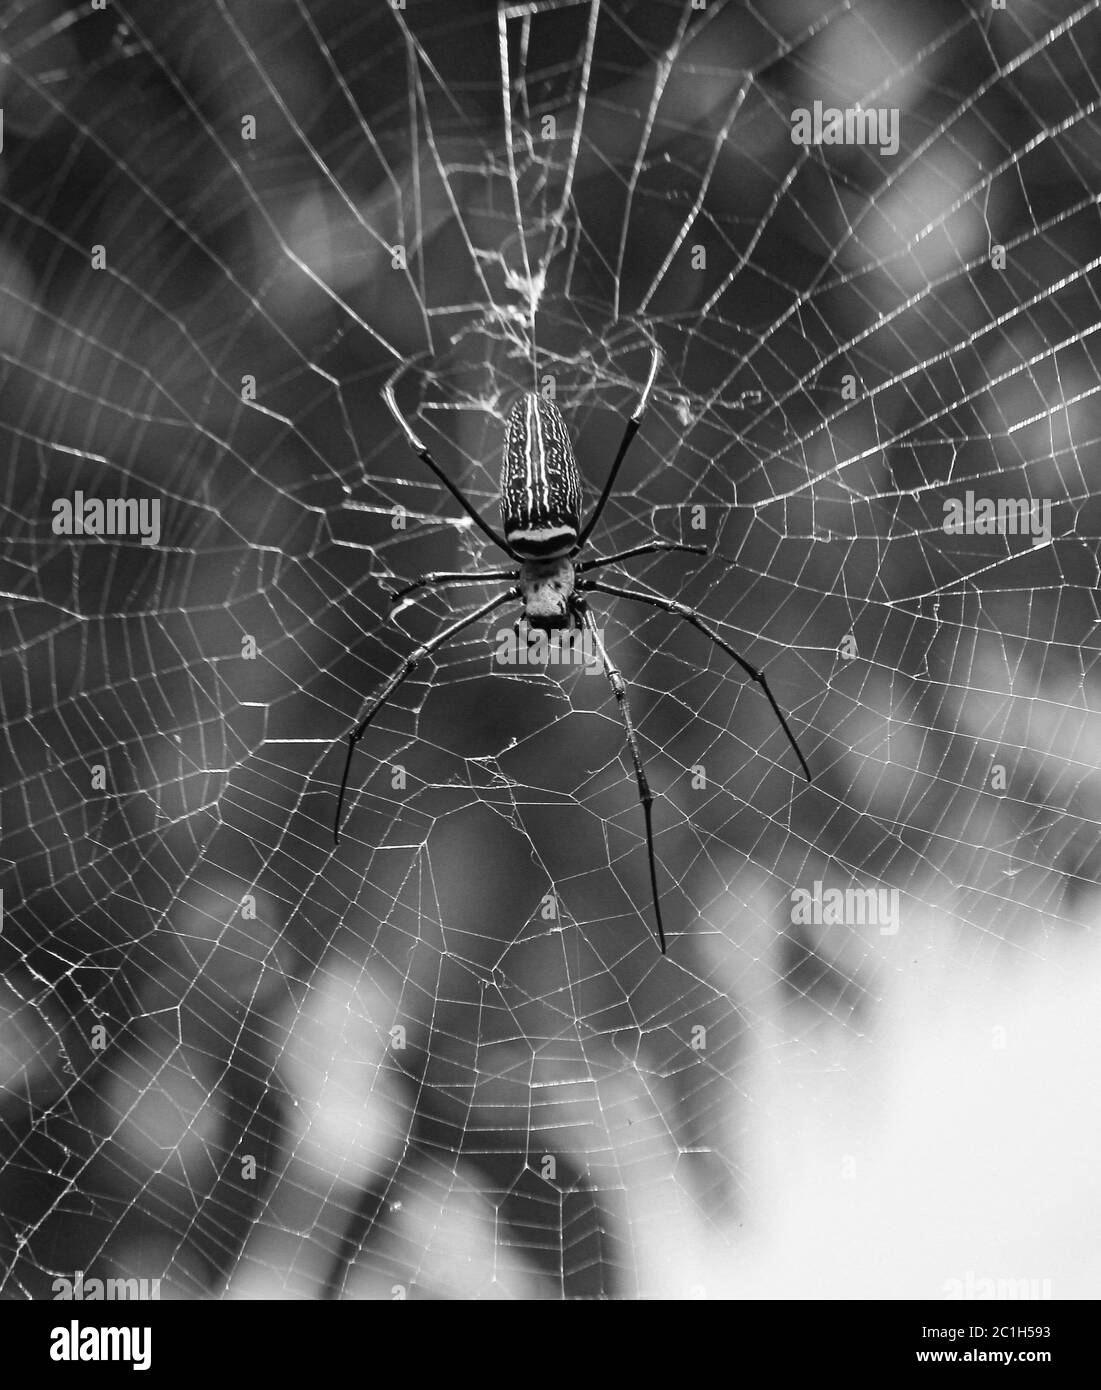 Gros plan macro de la toile d'araignée Nephilinae, fond noir et blanc. Araignée assise sur la toile Banque D'Images